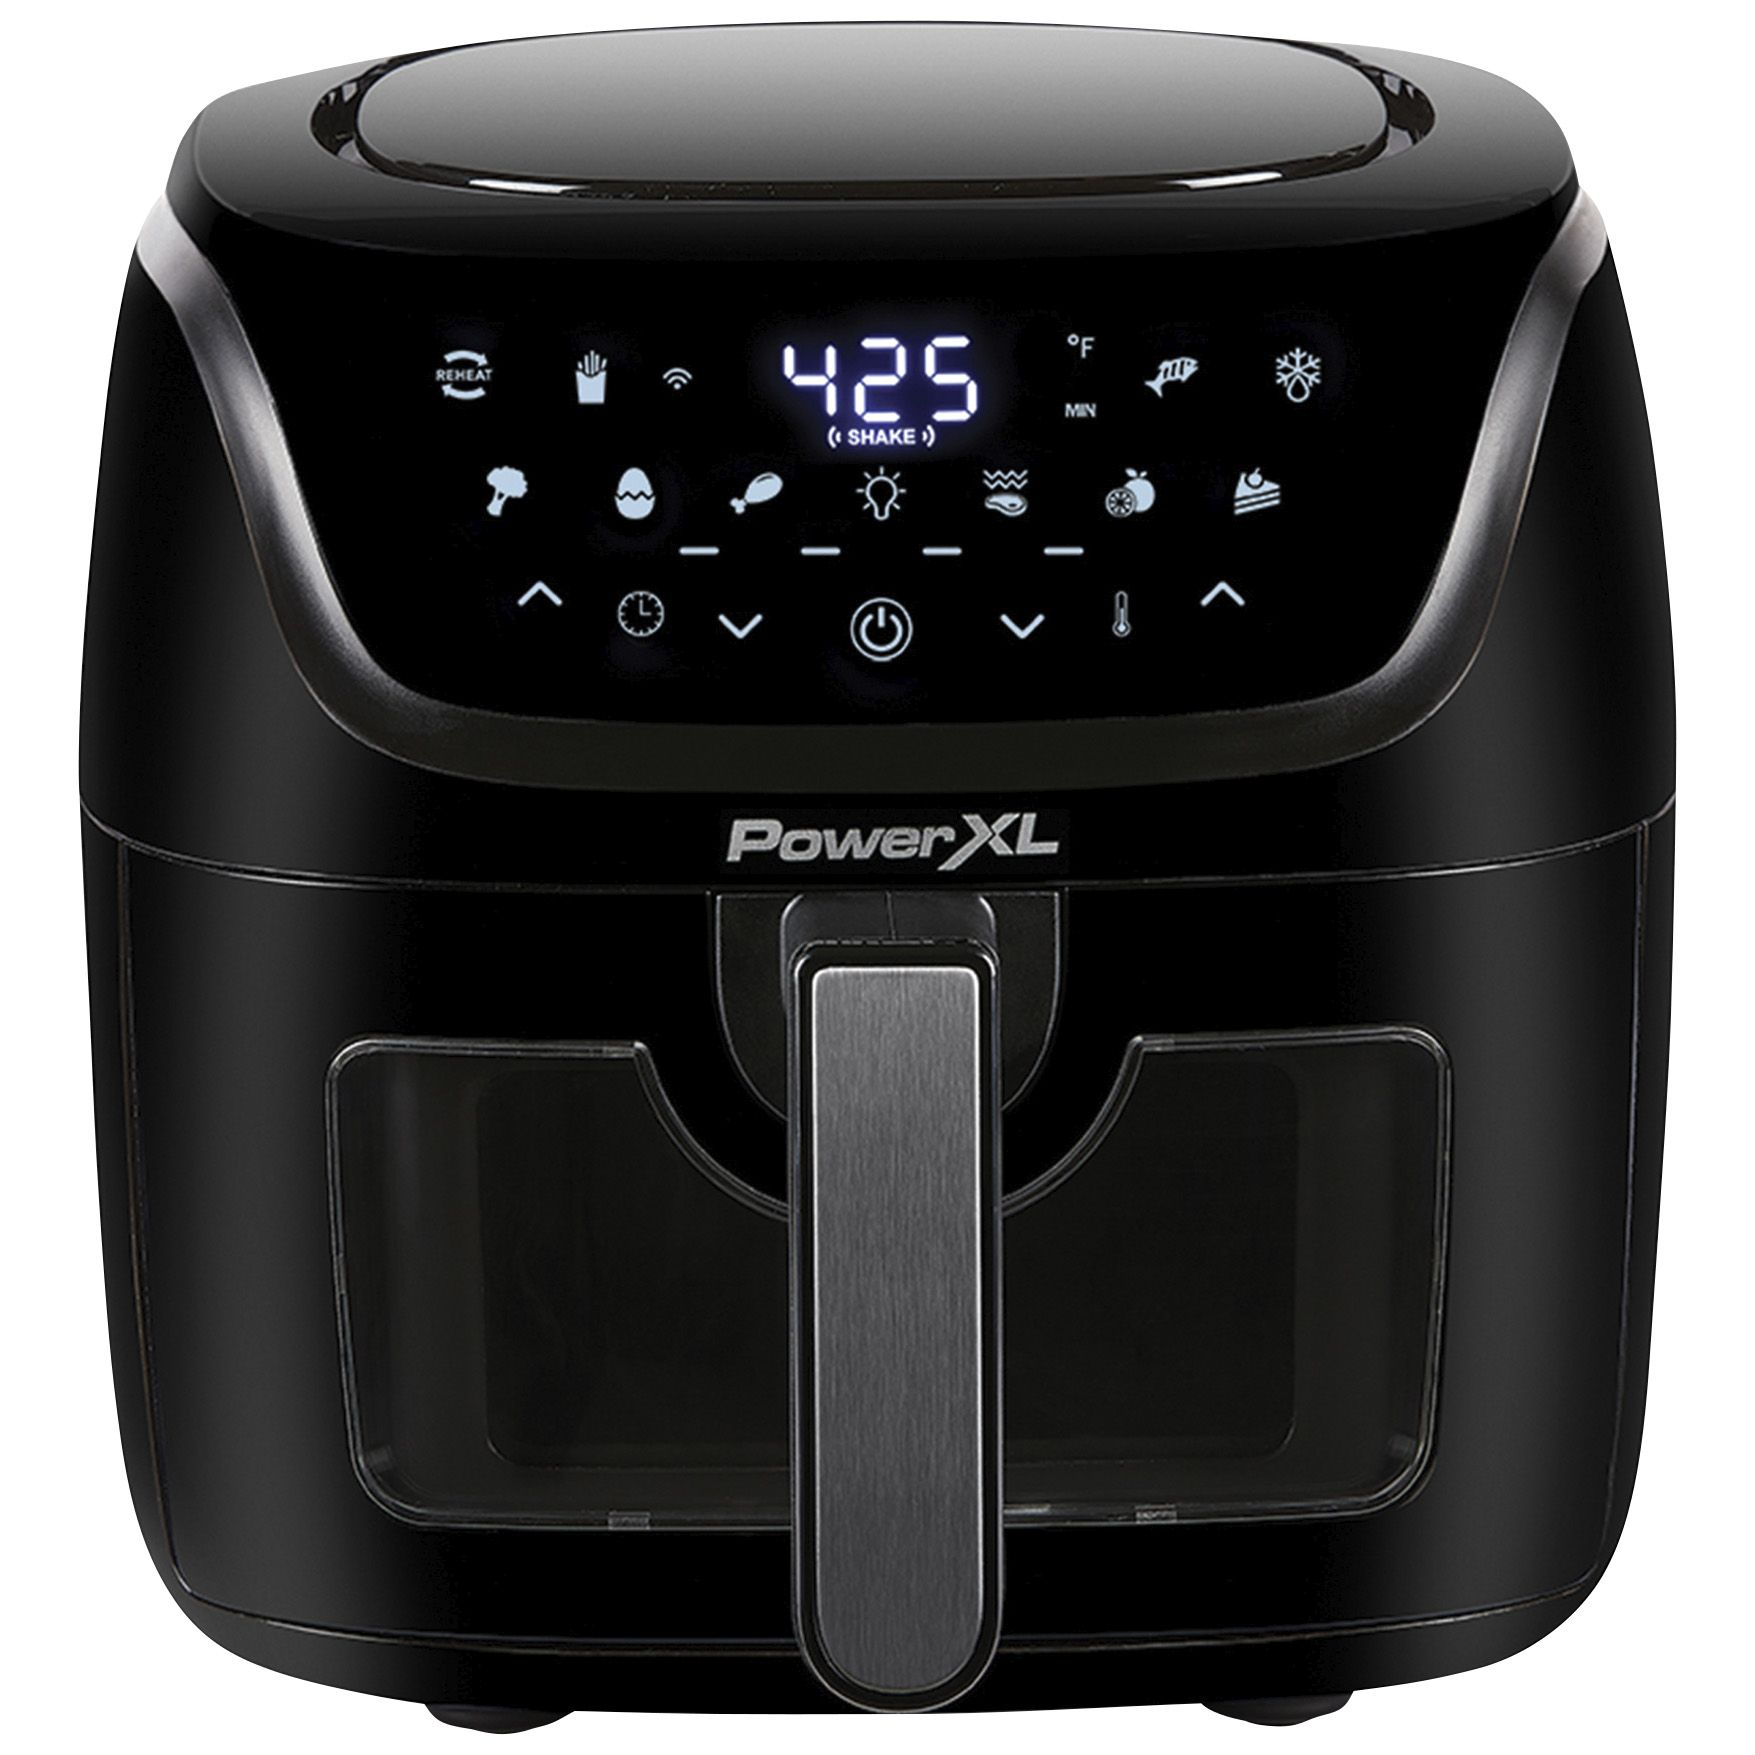 PowerXL Vortex Pro 8-Qt. Air Fryer - Black